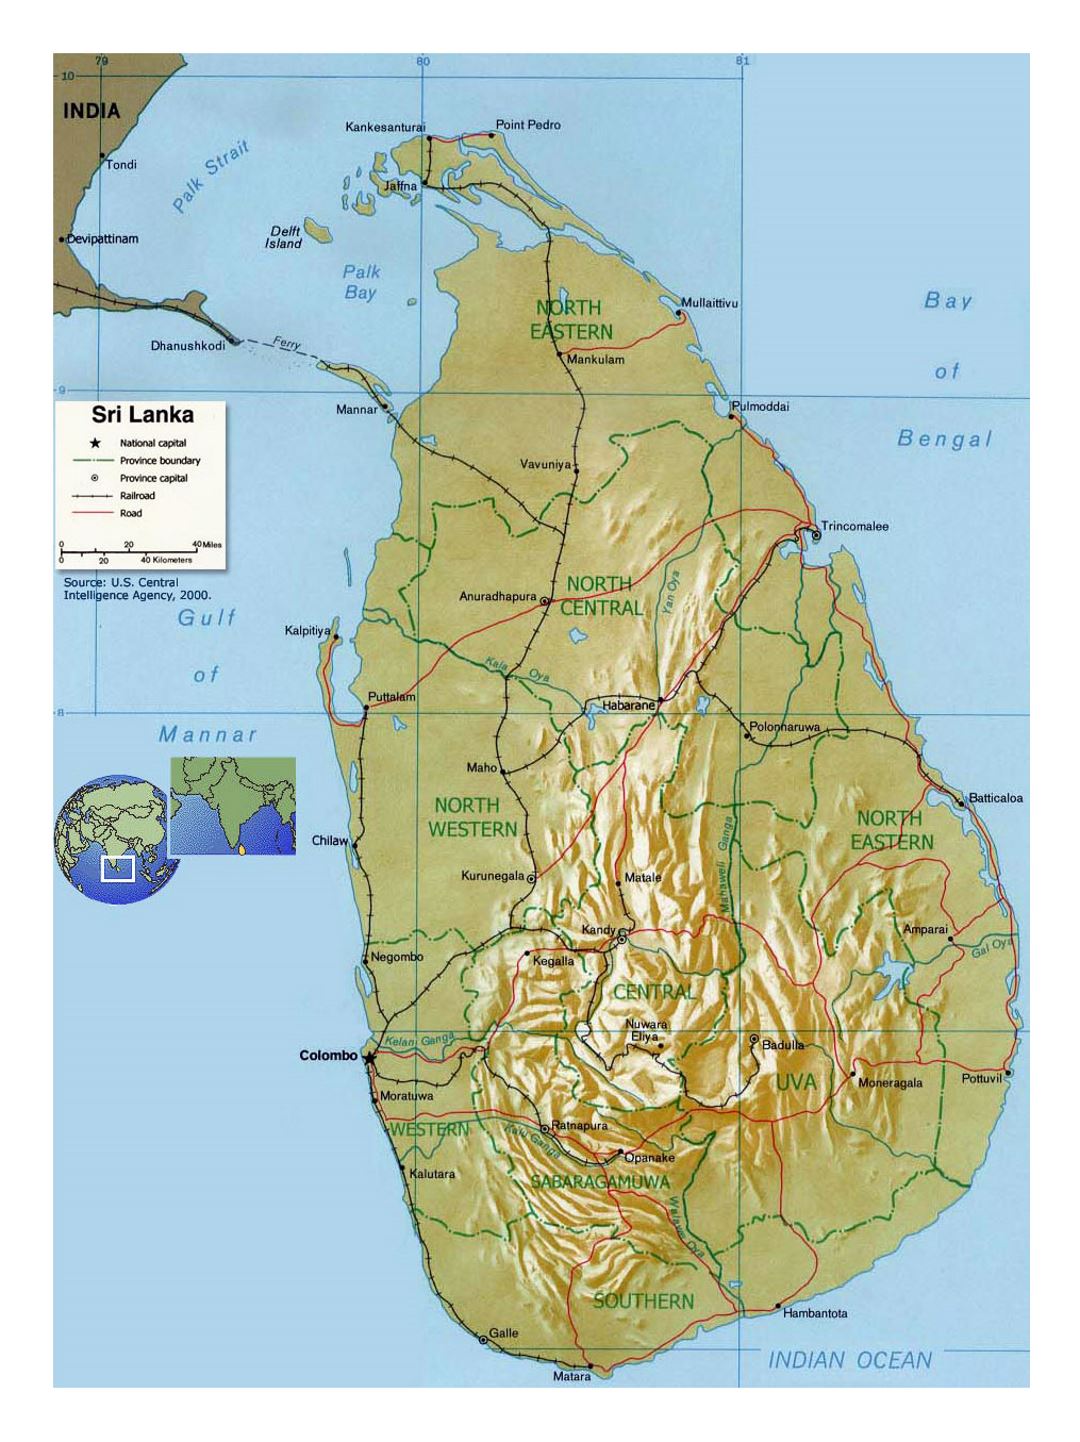 Detallado mapa político y administrativo de Sri Lanka con socorro, carreteras, ferrocarriles y principales ciudades